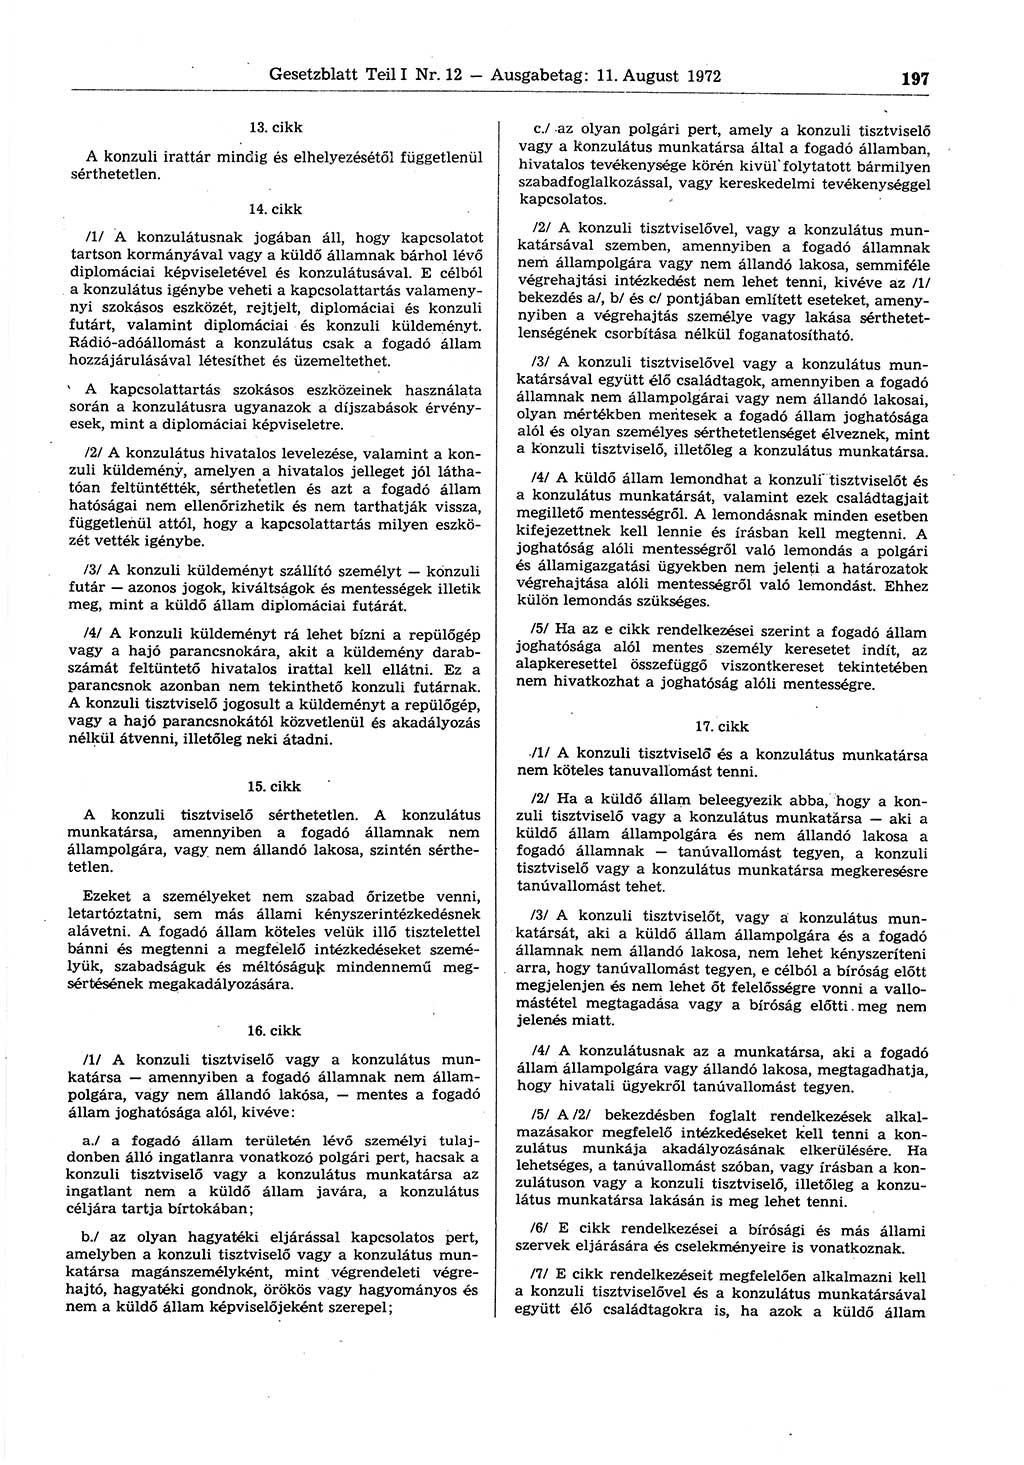 Gesetzblatt (GBl.) der Deutschen Demokratischen Republik (DDR) Teil Ⅰ 1972, Seite 197 (GBl. DDR Ⅰ 1972, S. 197)